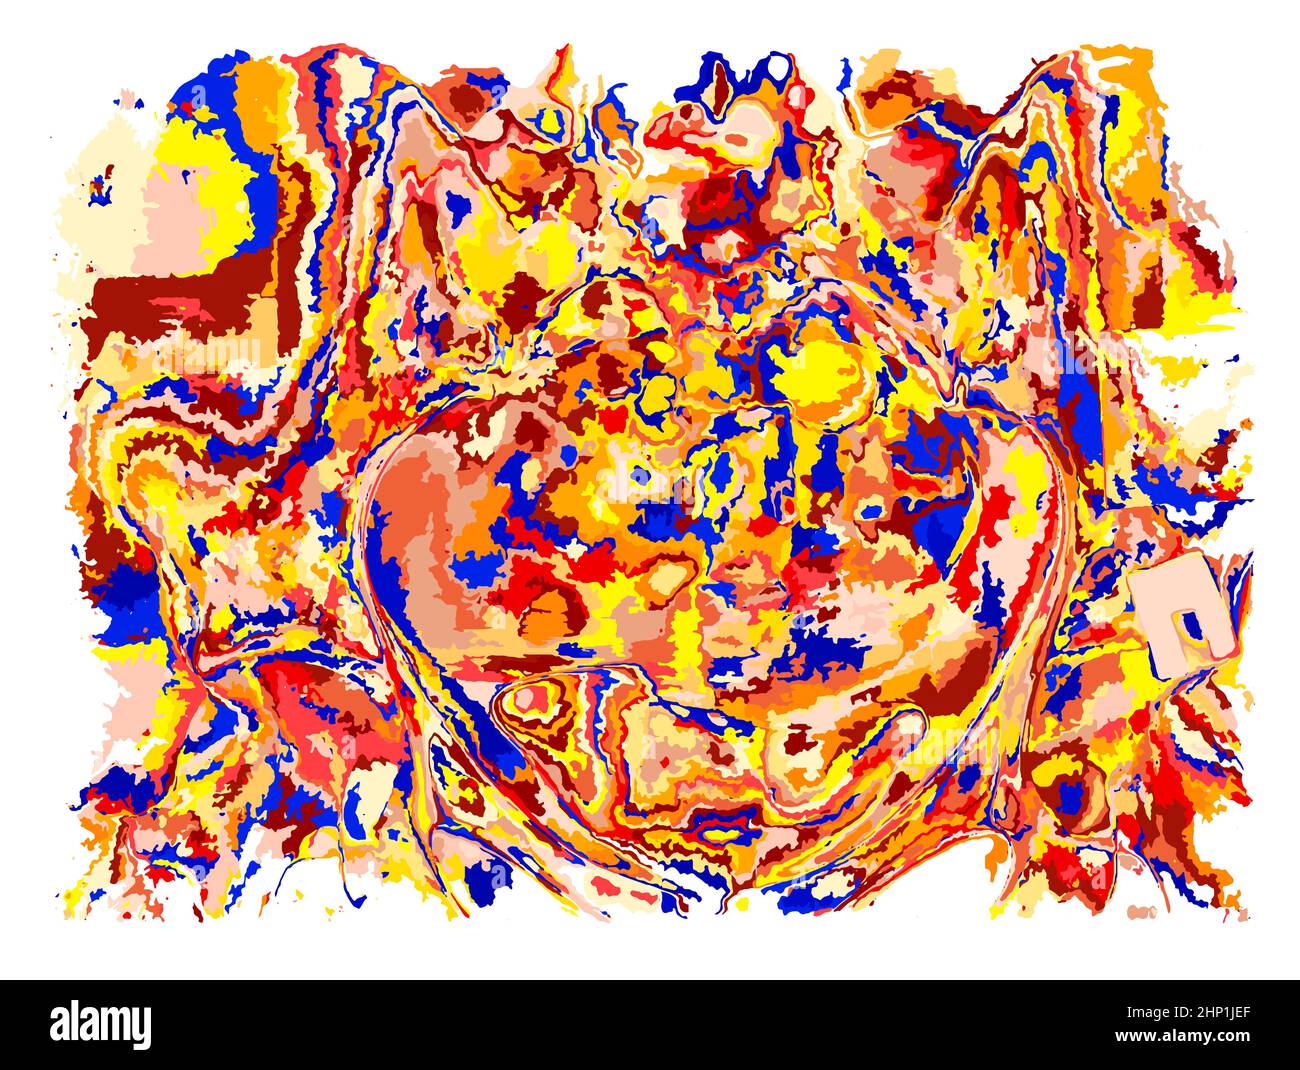 Flüssige Kunst, abstrakte farbige chaotische Abstriche Malerei, fließende bunte Tinte. Zeitgenössisches Grafikkonzept für NFT Digital Gallery. Vektorgrafik Stock Vektor